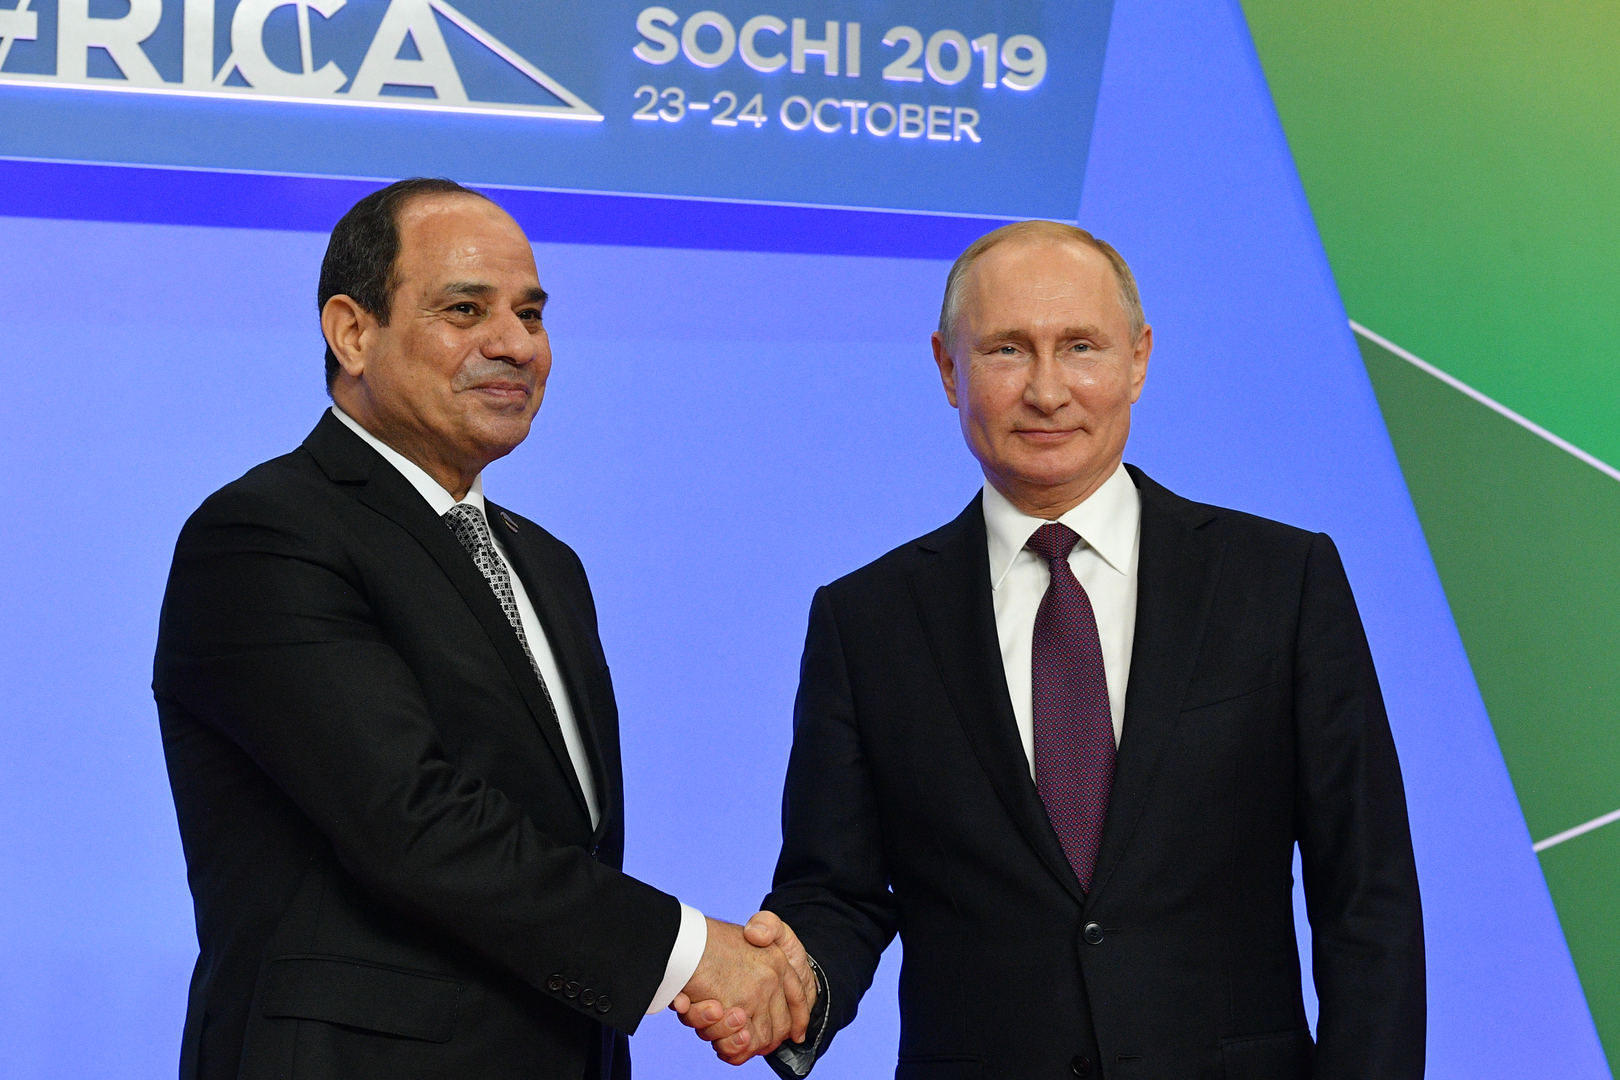 الرئاسة المصرية: السيسي وبوتين يتوافقان على أهمية تكثيف الجهود حول ليبيا